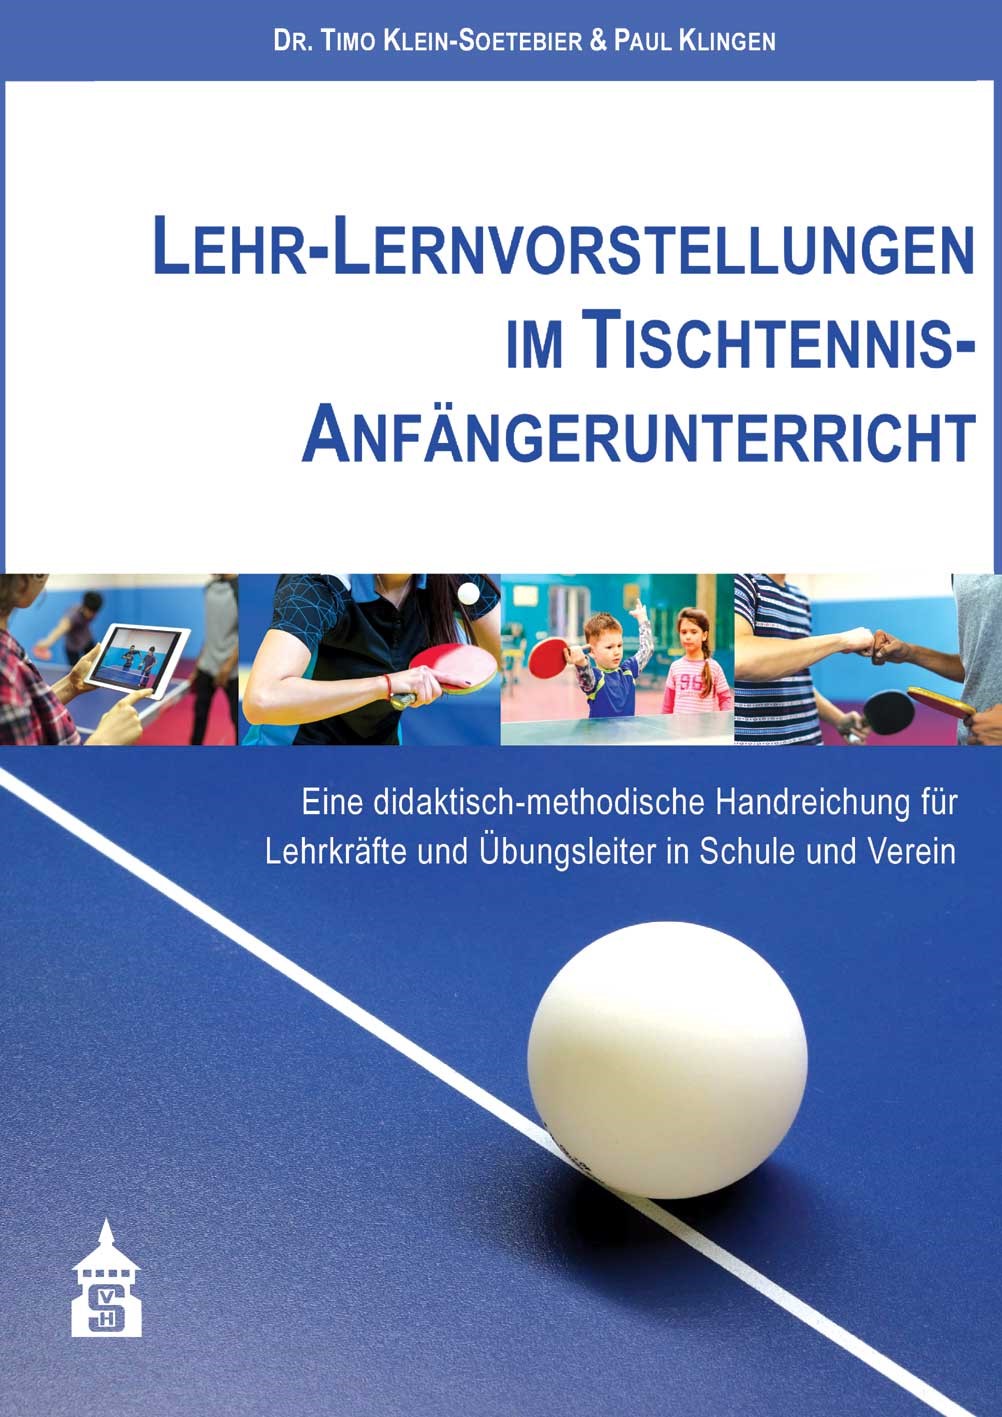 Lehr-/Lernvorstellungen im Tischtennis-Anfängerunterricht (Autoren:  Klein-Soetebier, Klingen)